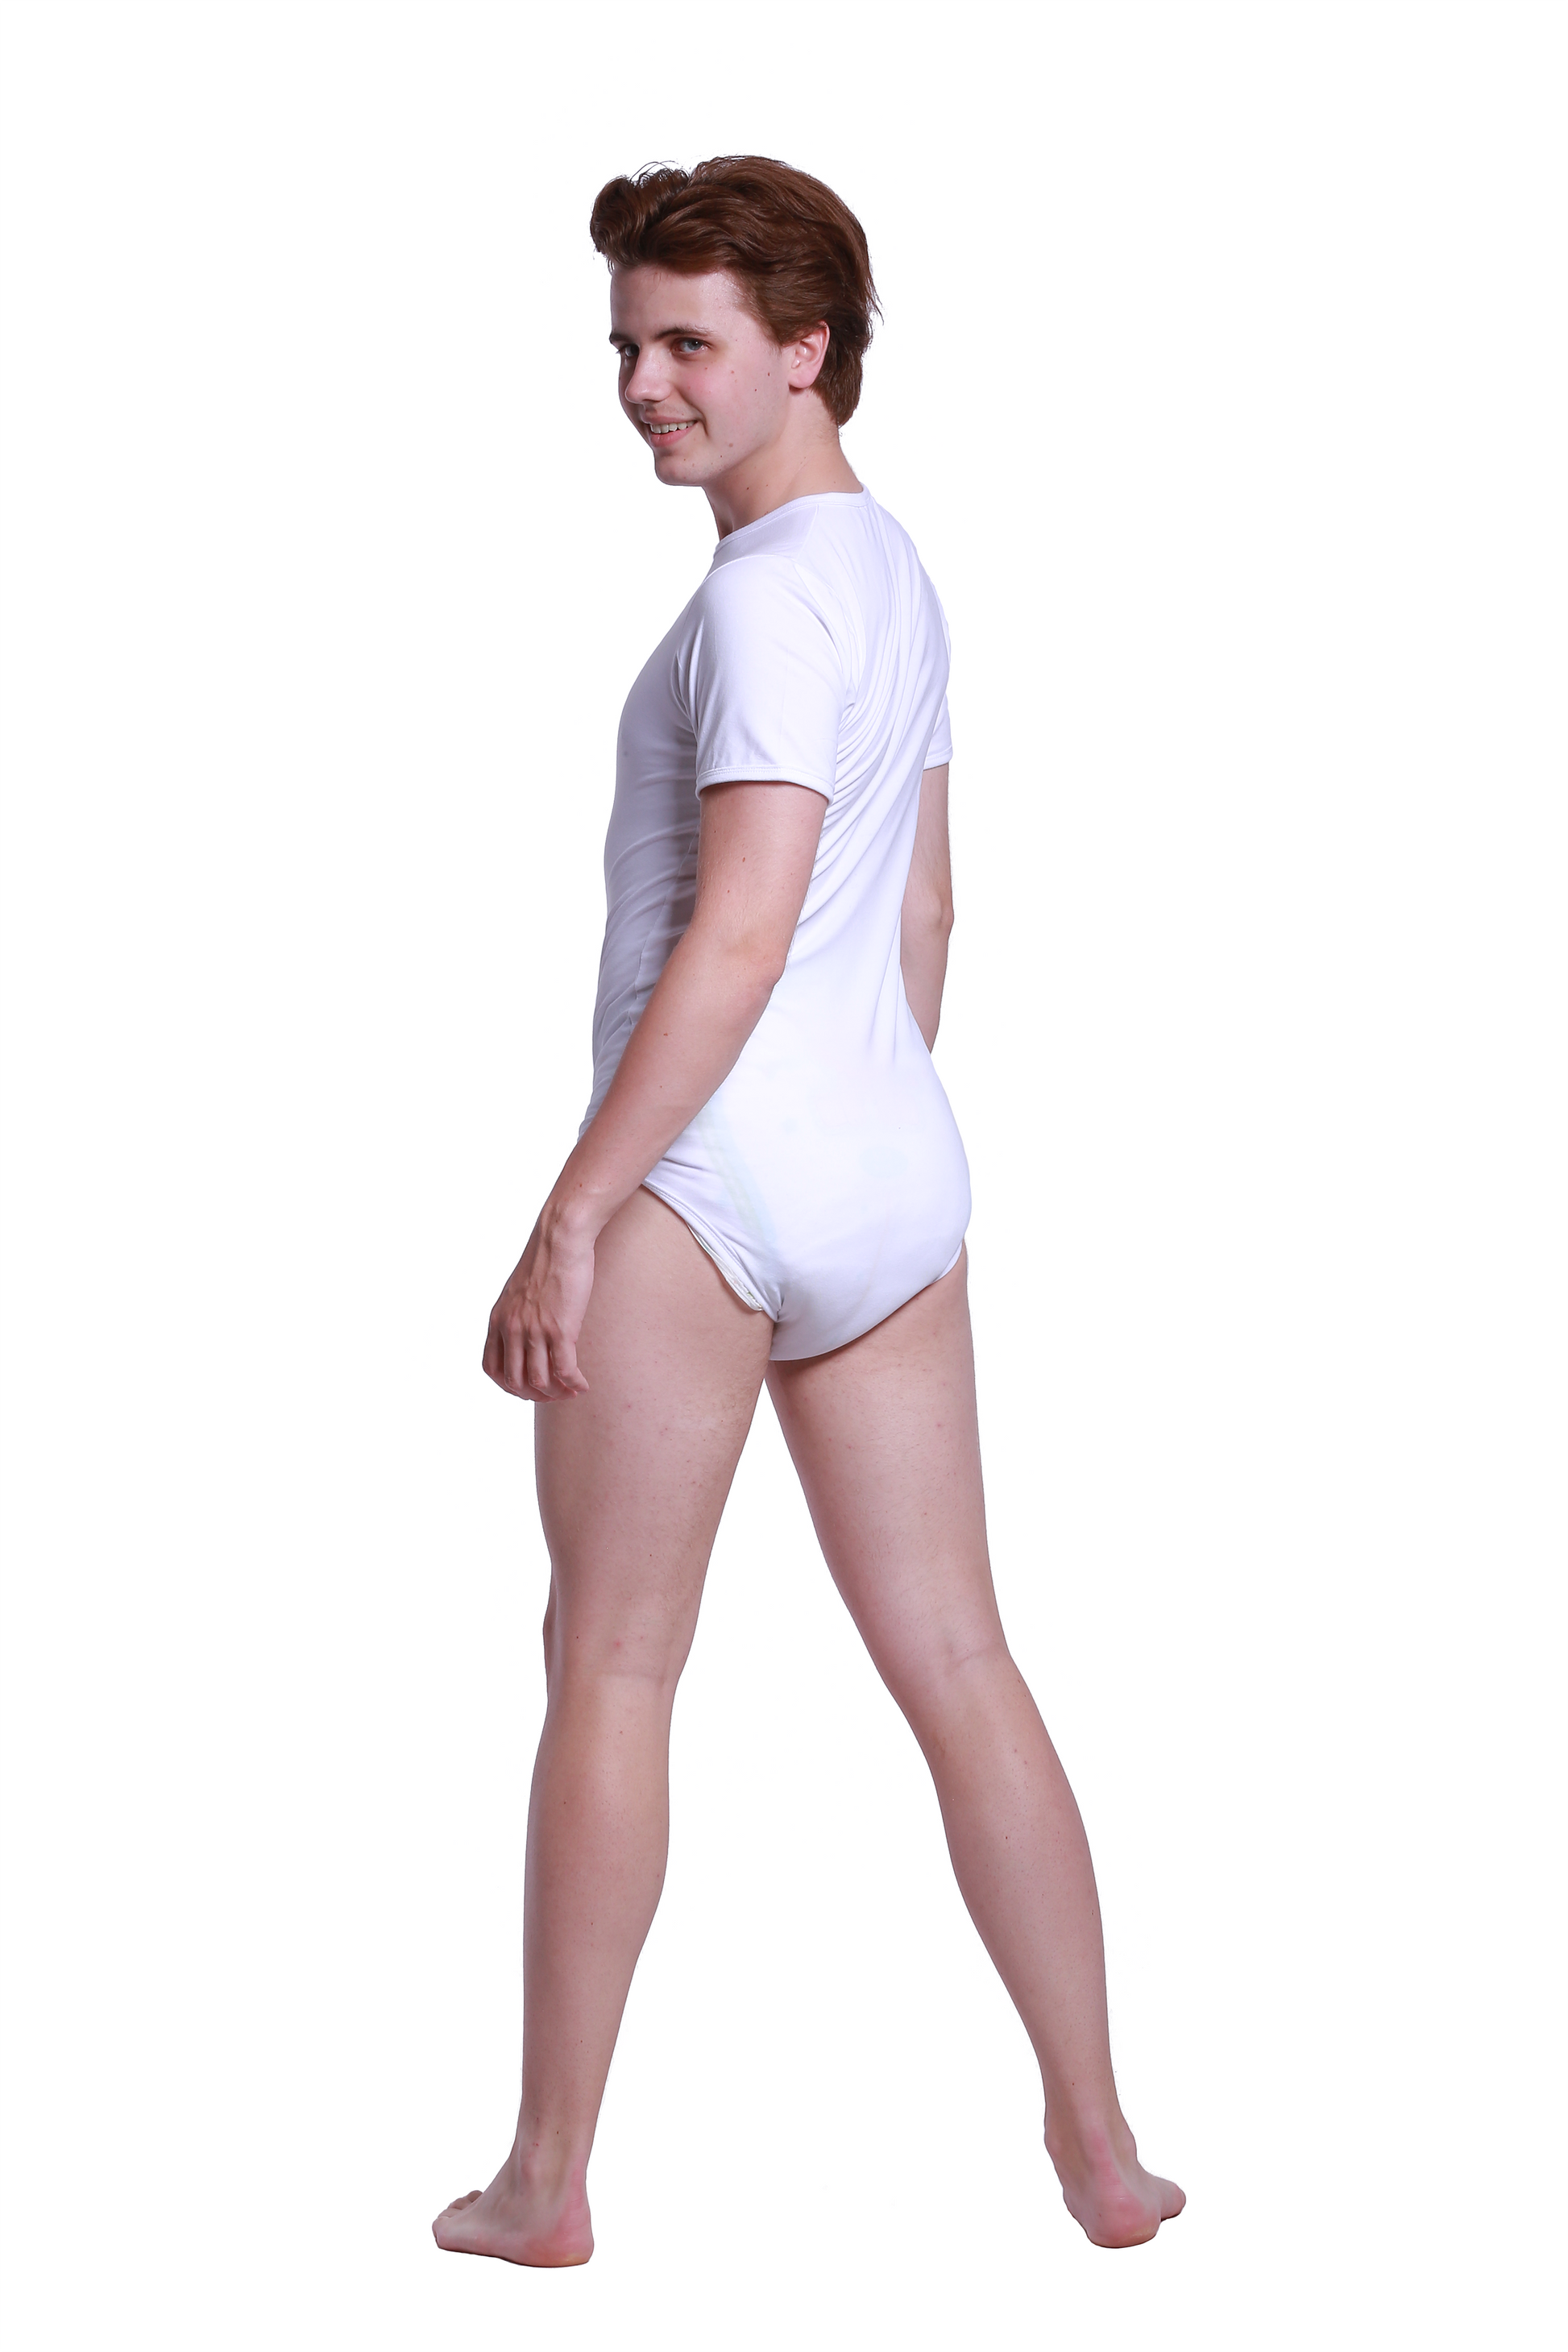 dietz Men white Bodysuit One-Piece onezee lounge wear underwear size L XL